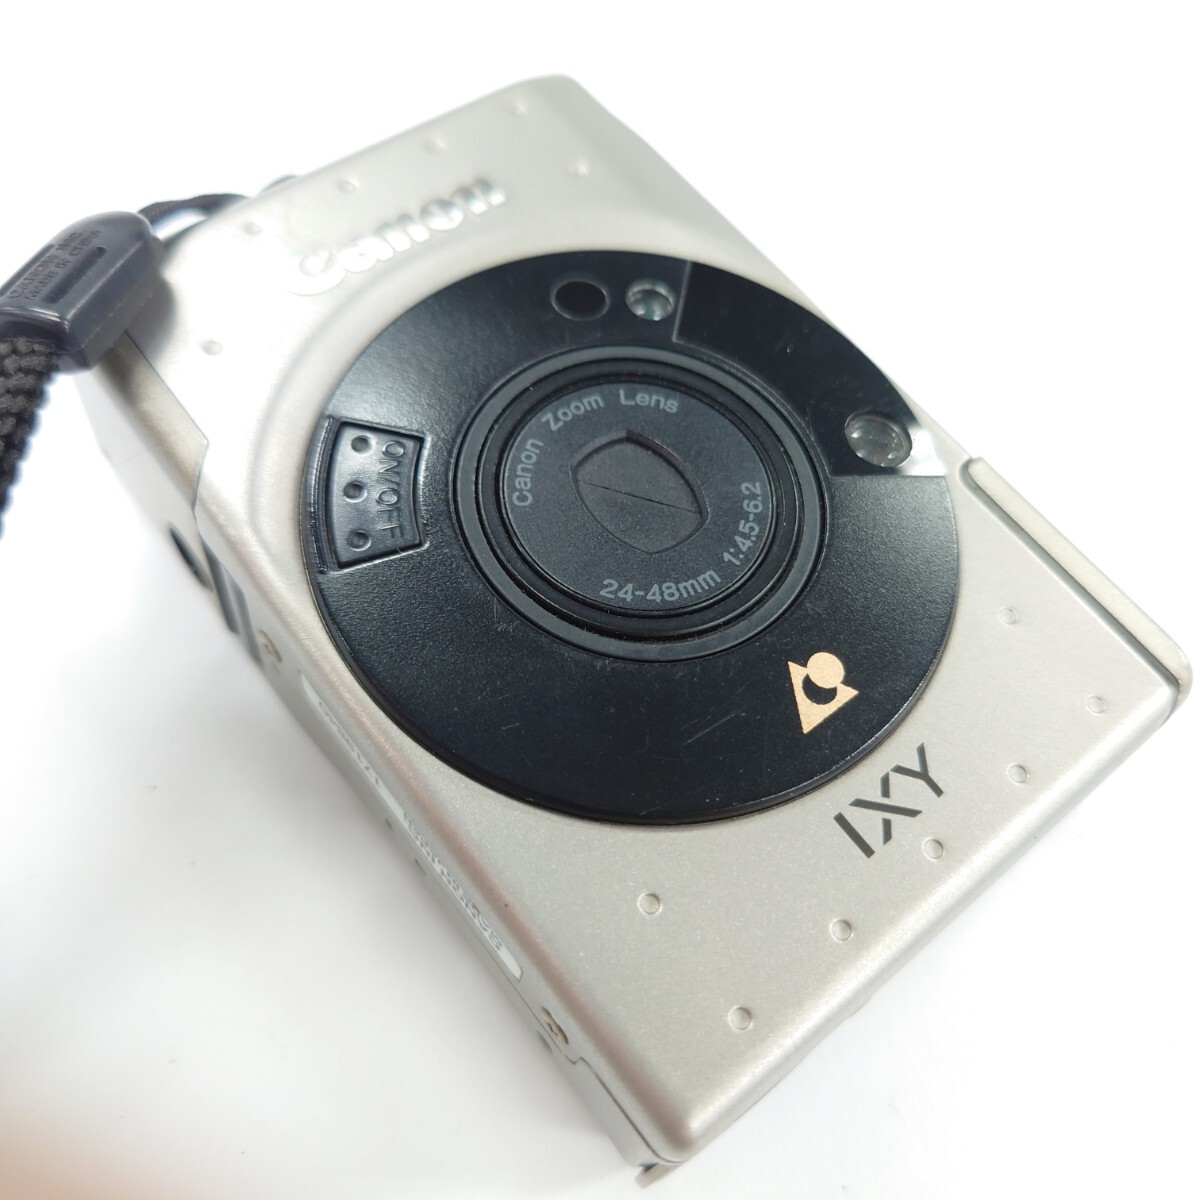 I776 フィルムカメラ Canon IXY キャノン Canon Zoom Lens 24-48mm 1:4.5-6.2 カメラ 中古 ジャンク品 訳ありの画像10